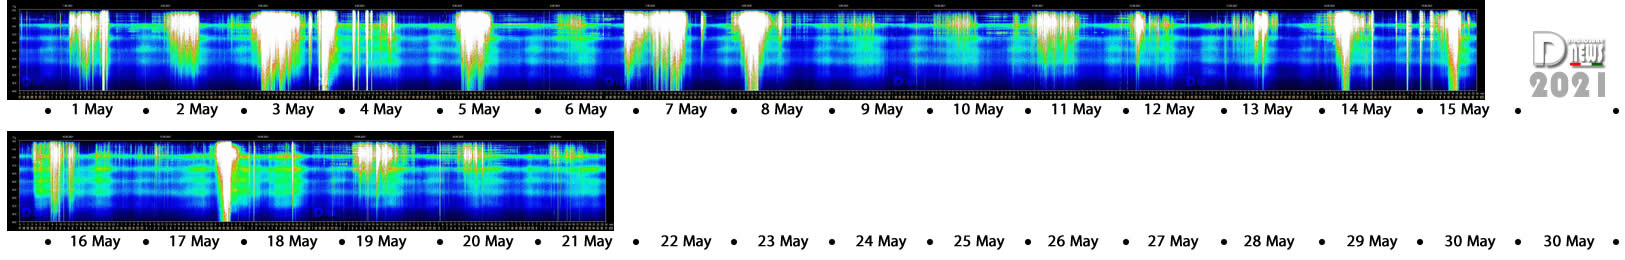 schumann resonance stripe may 21 2021 - Sončev pobeg / Solarni pobeg